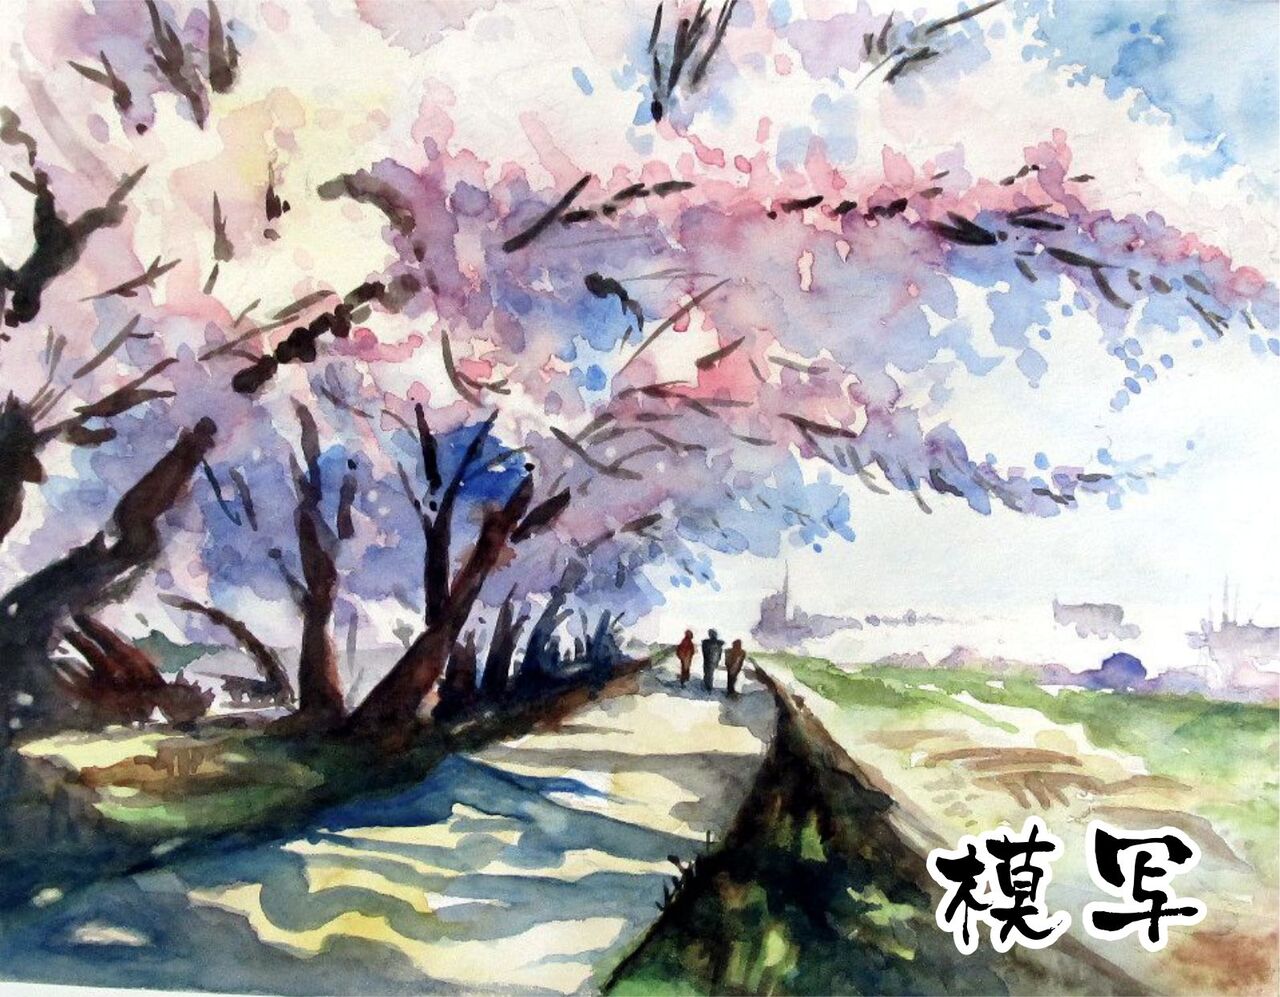 04 練習水彩画 柴崎春道さんの桜の風景画の模写 シニアから始めた透明水彩画